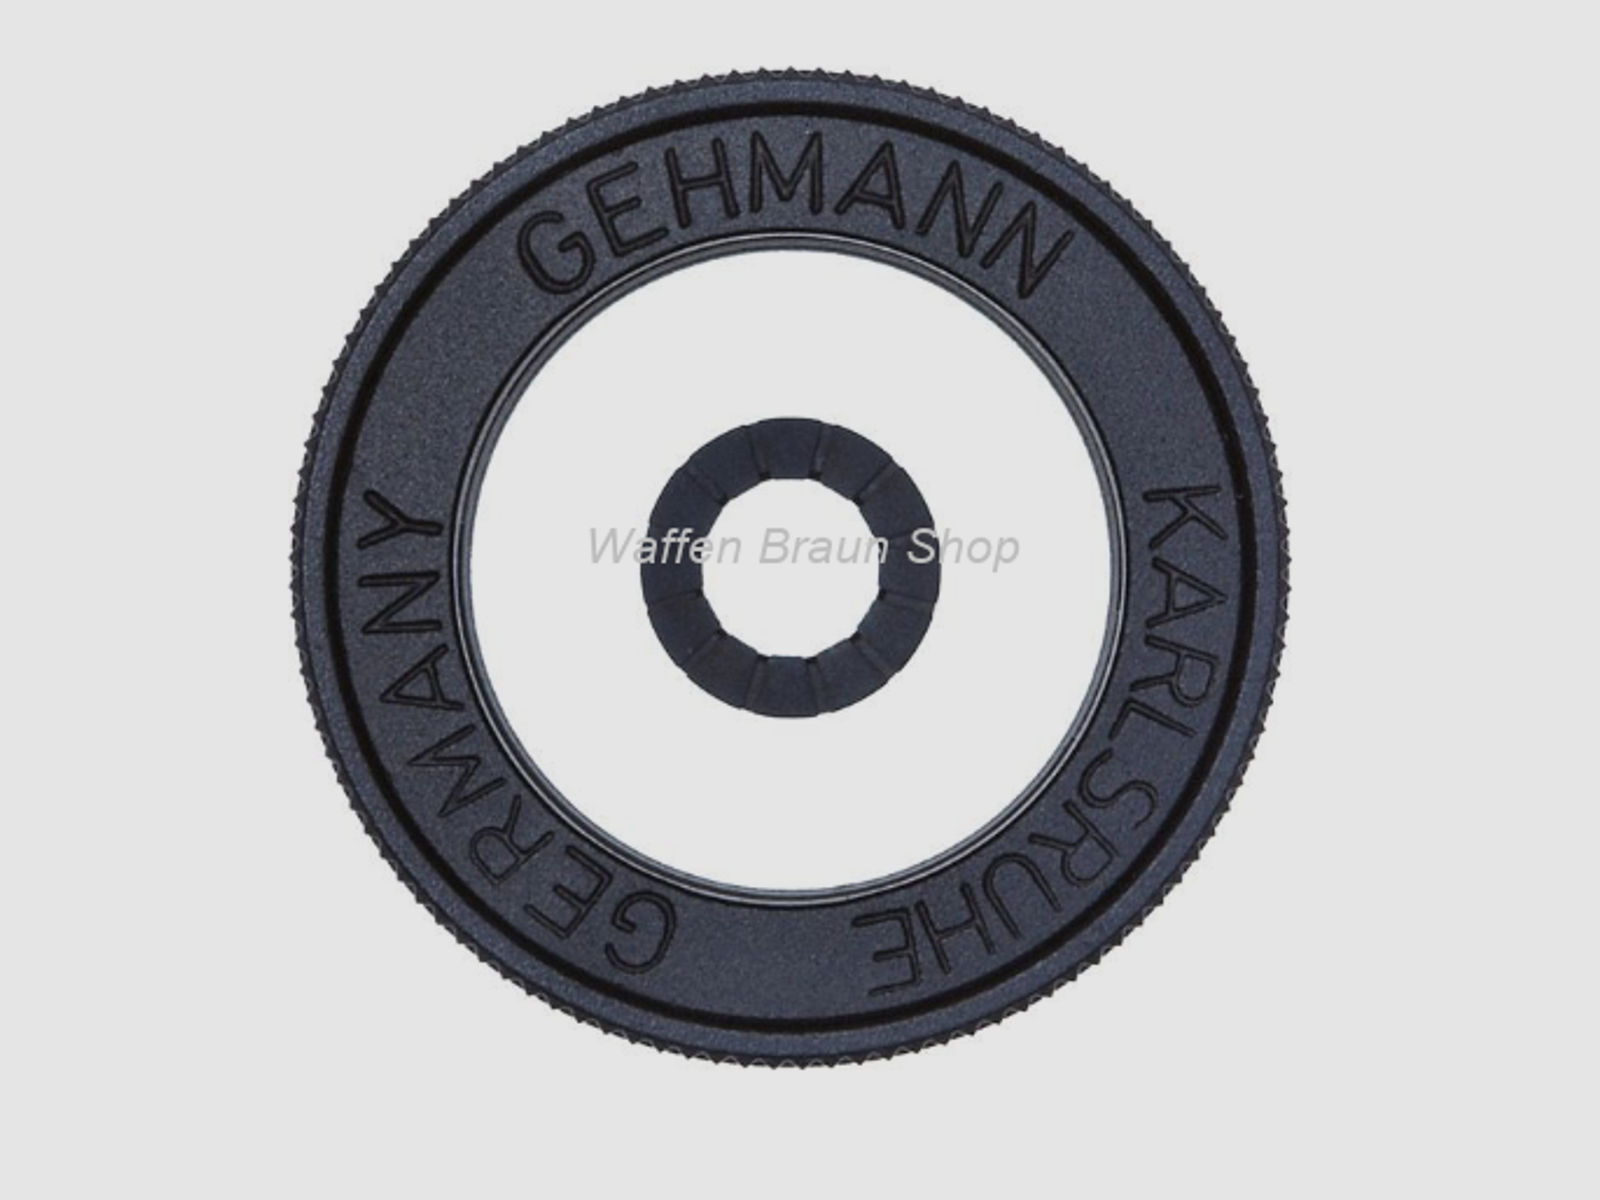 Gehmann Iris-Ringkorn M18 x 0,5 Verstellbereich von 4,0 - 6,0 mm